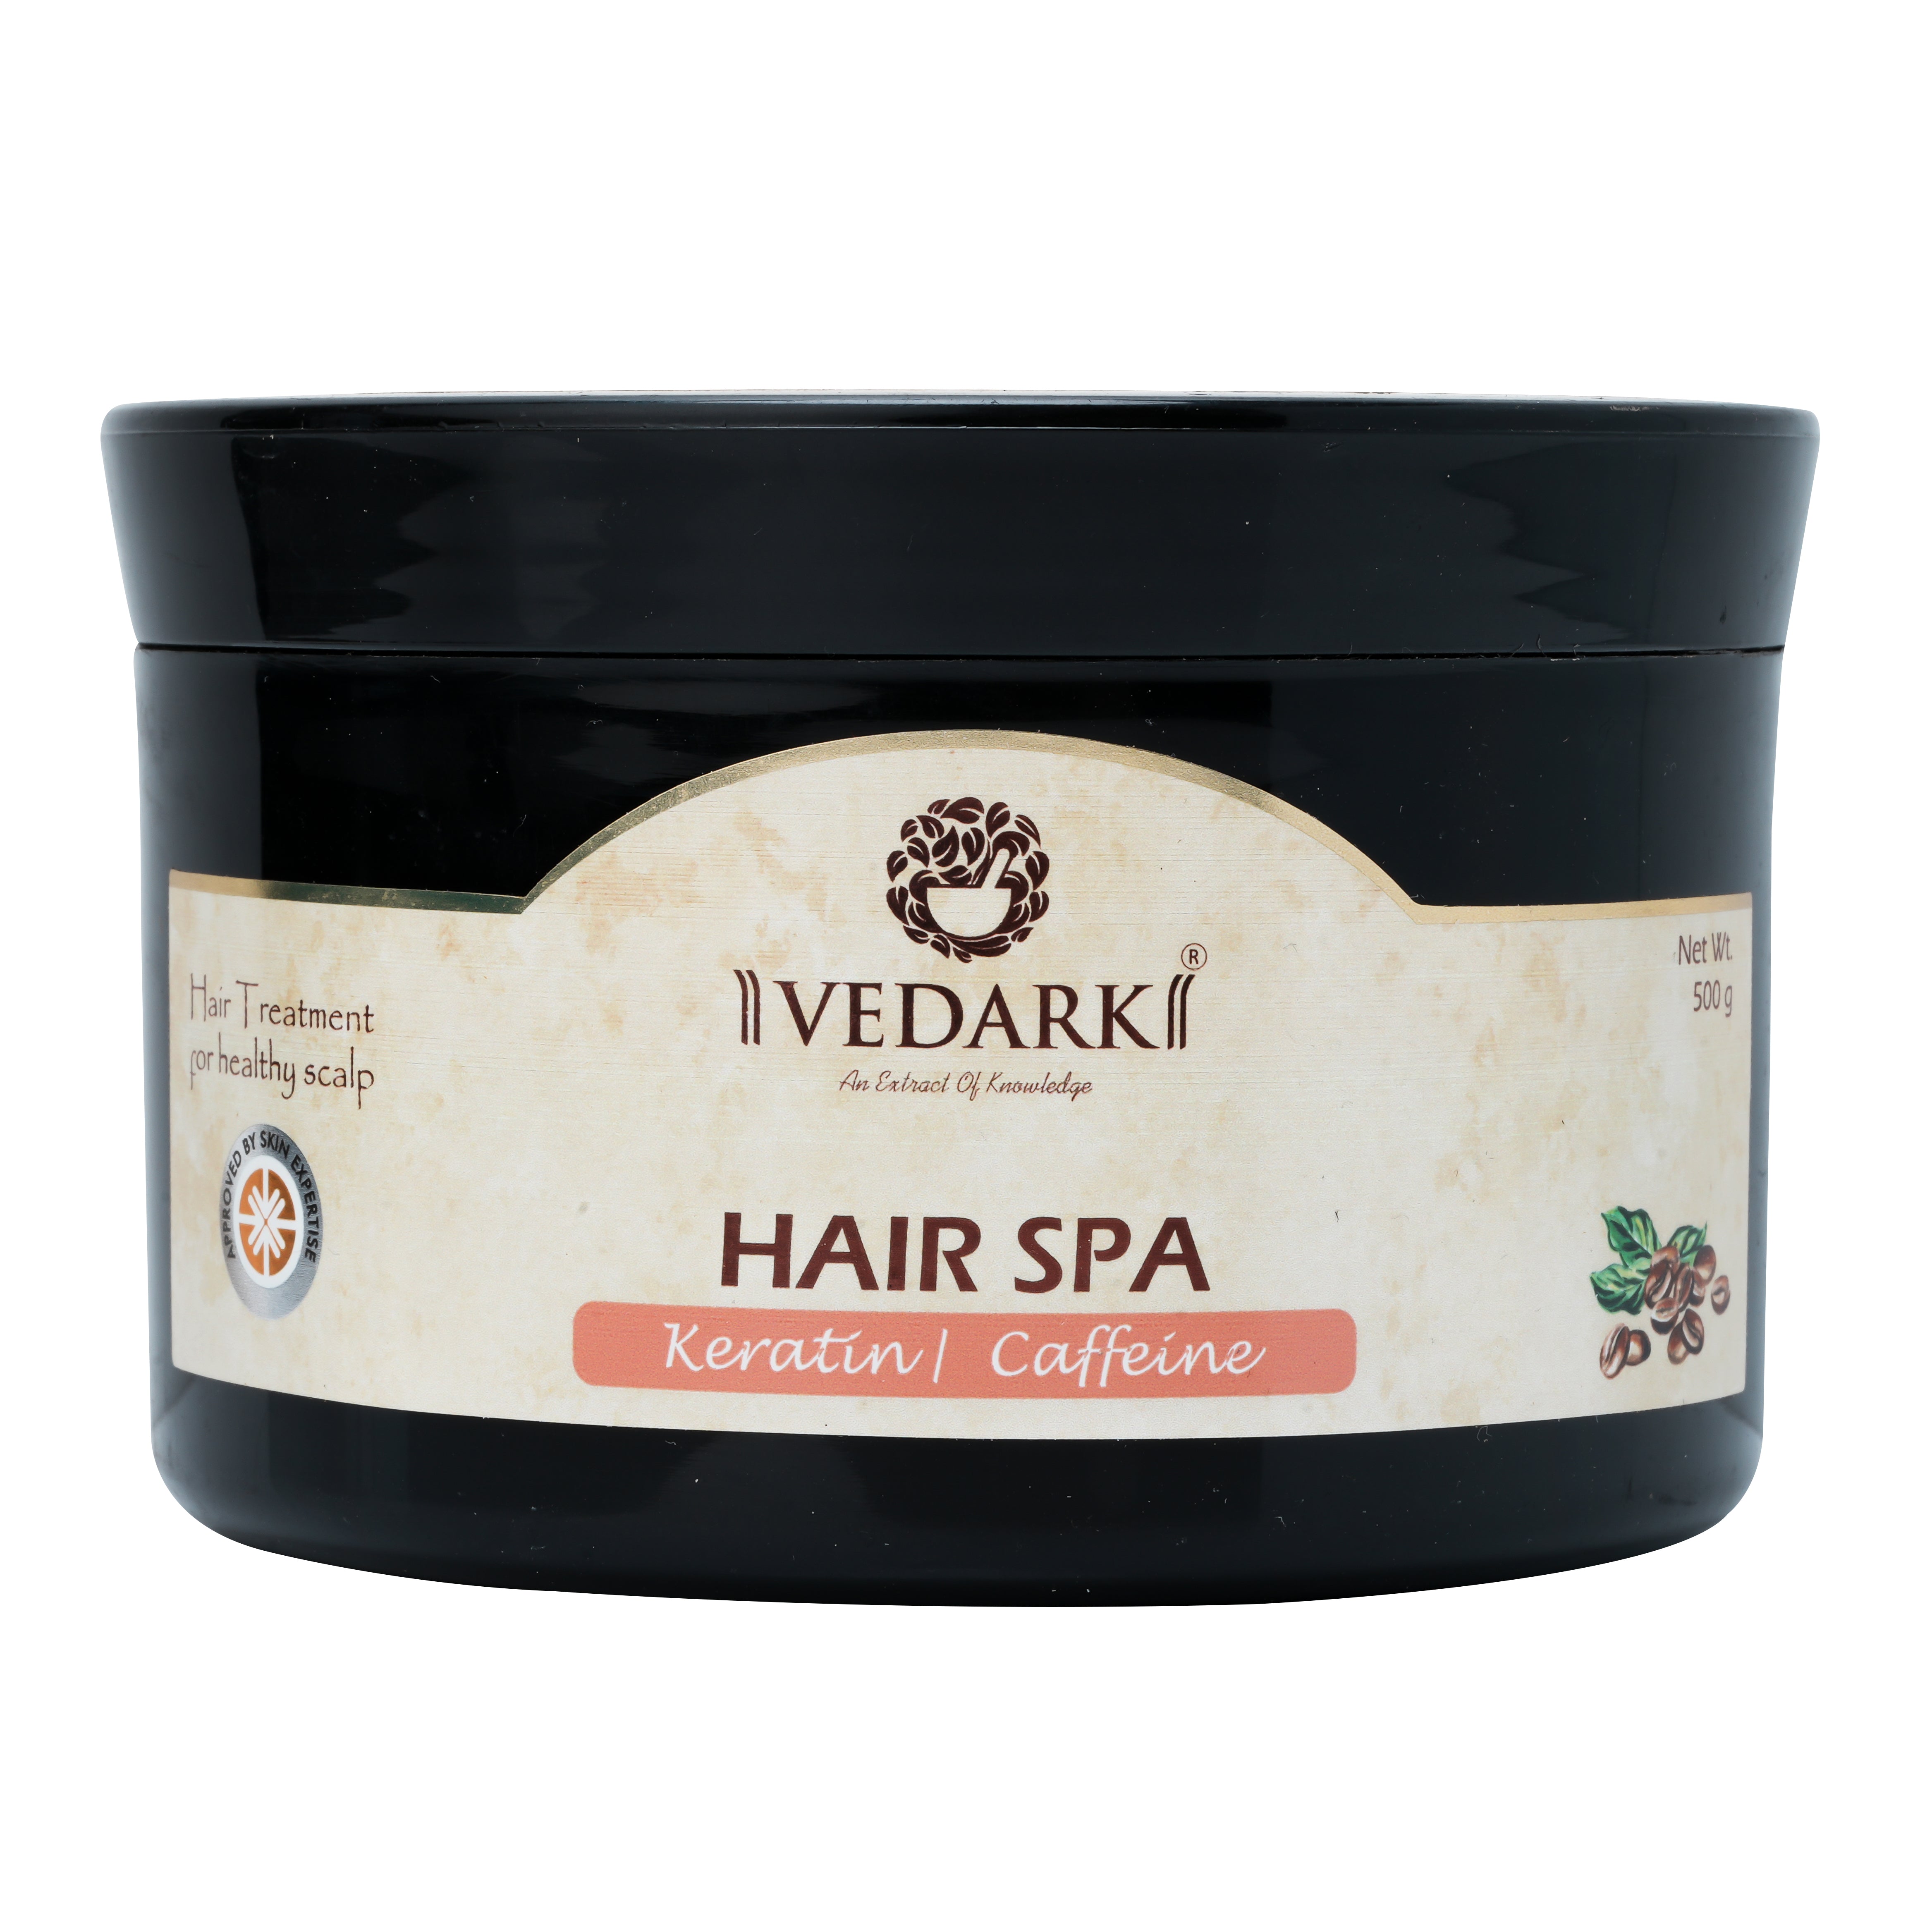 Vedark Hair Spa